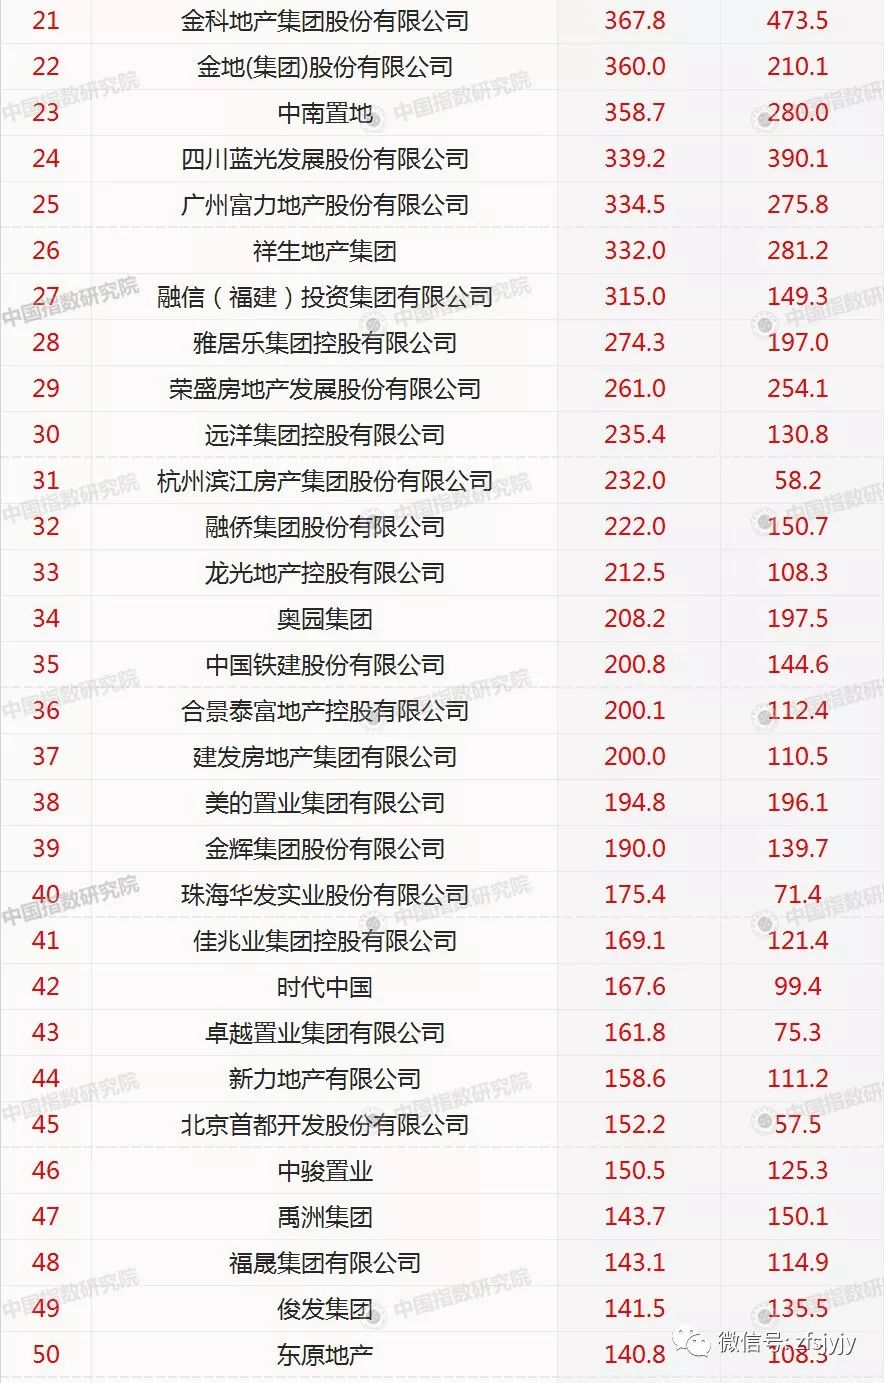 2018年1-4月中国房地产企业销售额排行榜TOP